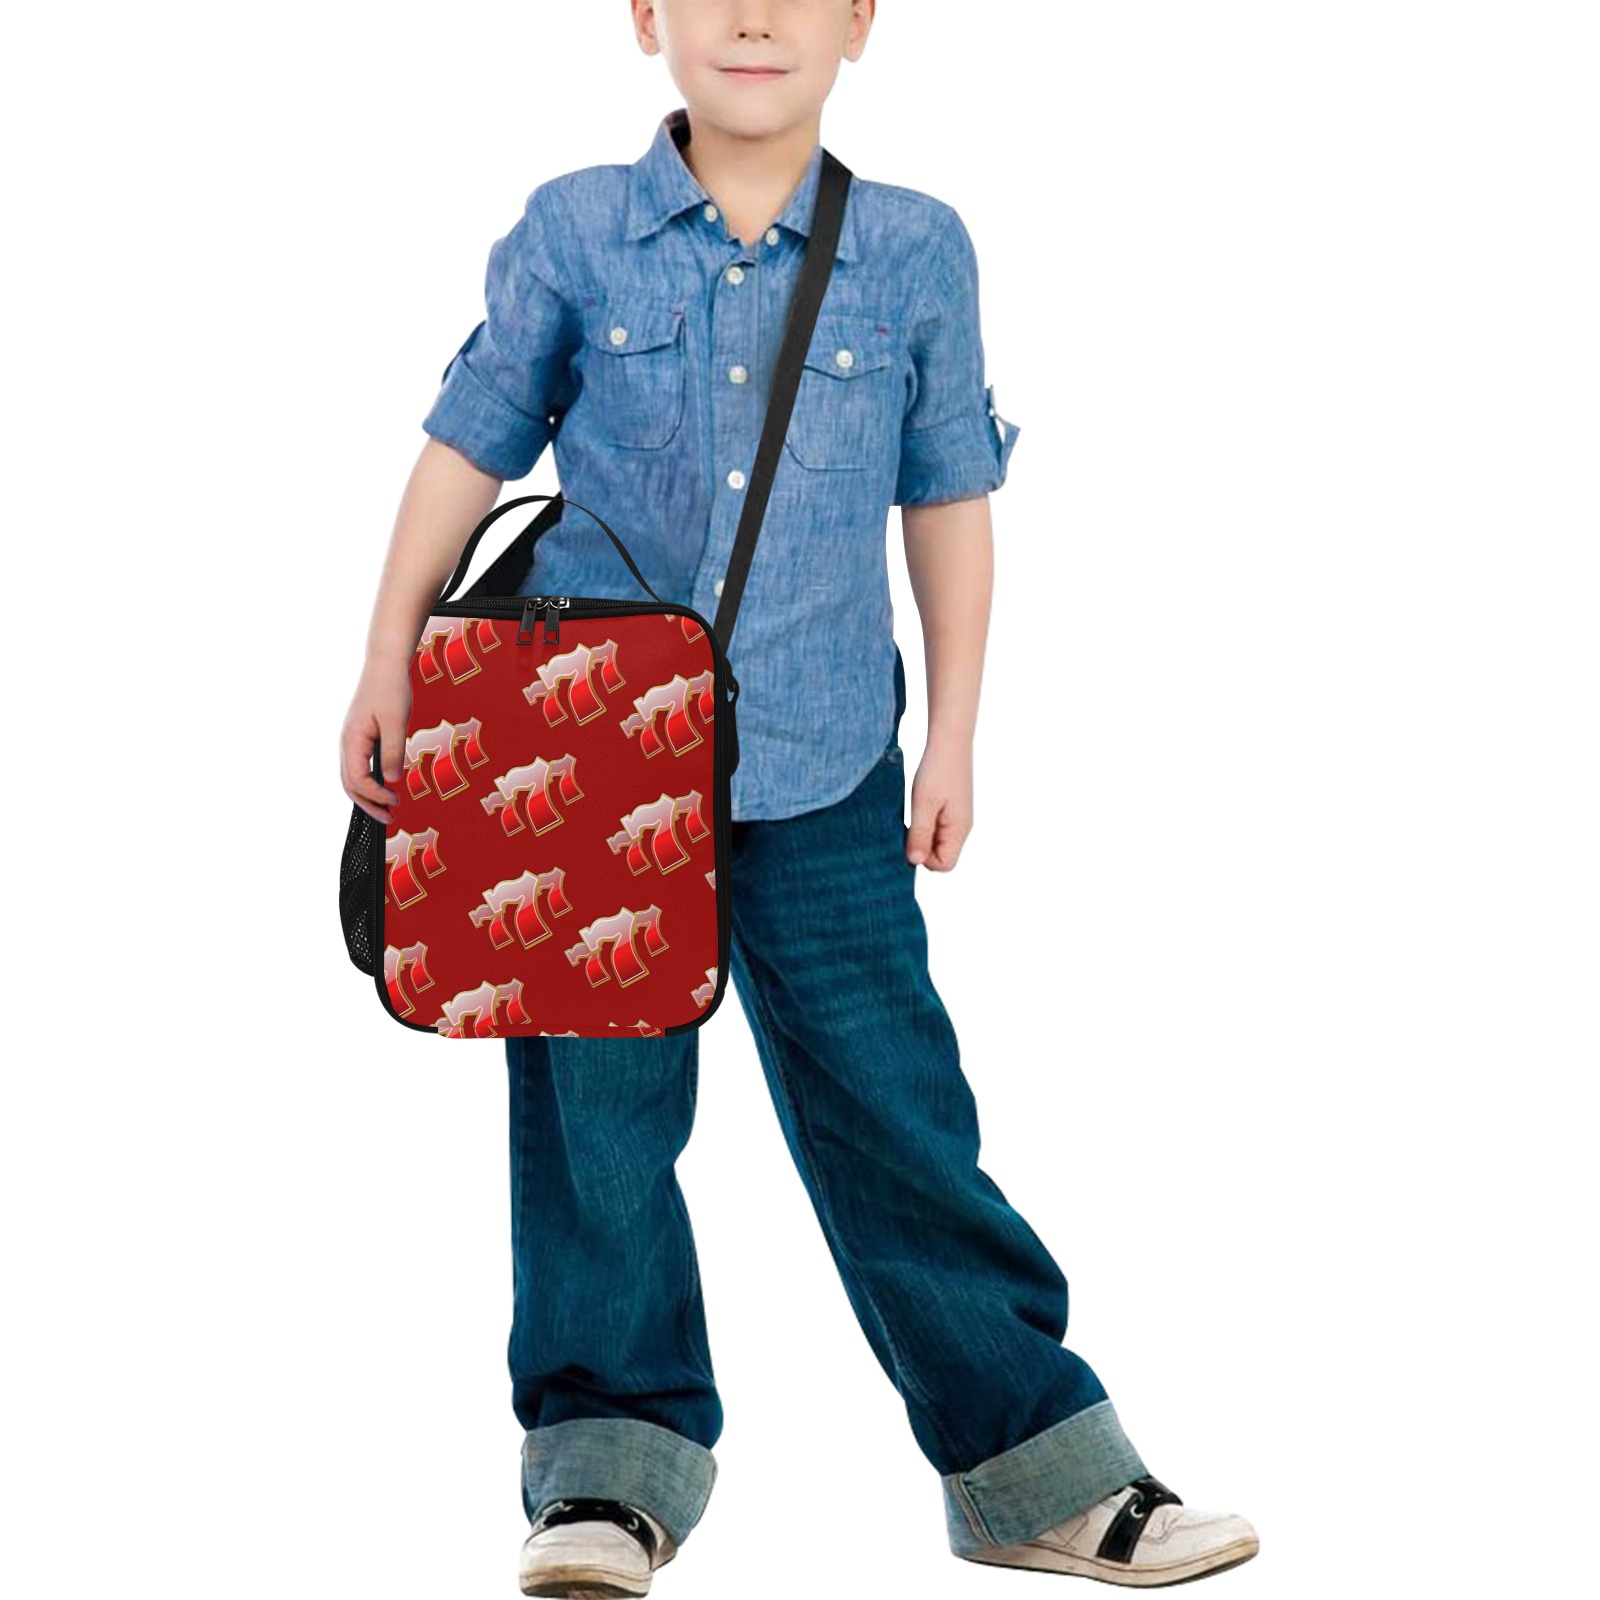 Las Vegas Sevens 777 / Red All Over Print Crossbody Lunch Bag for Kids (Model 1722)